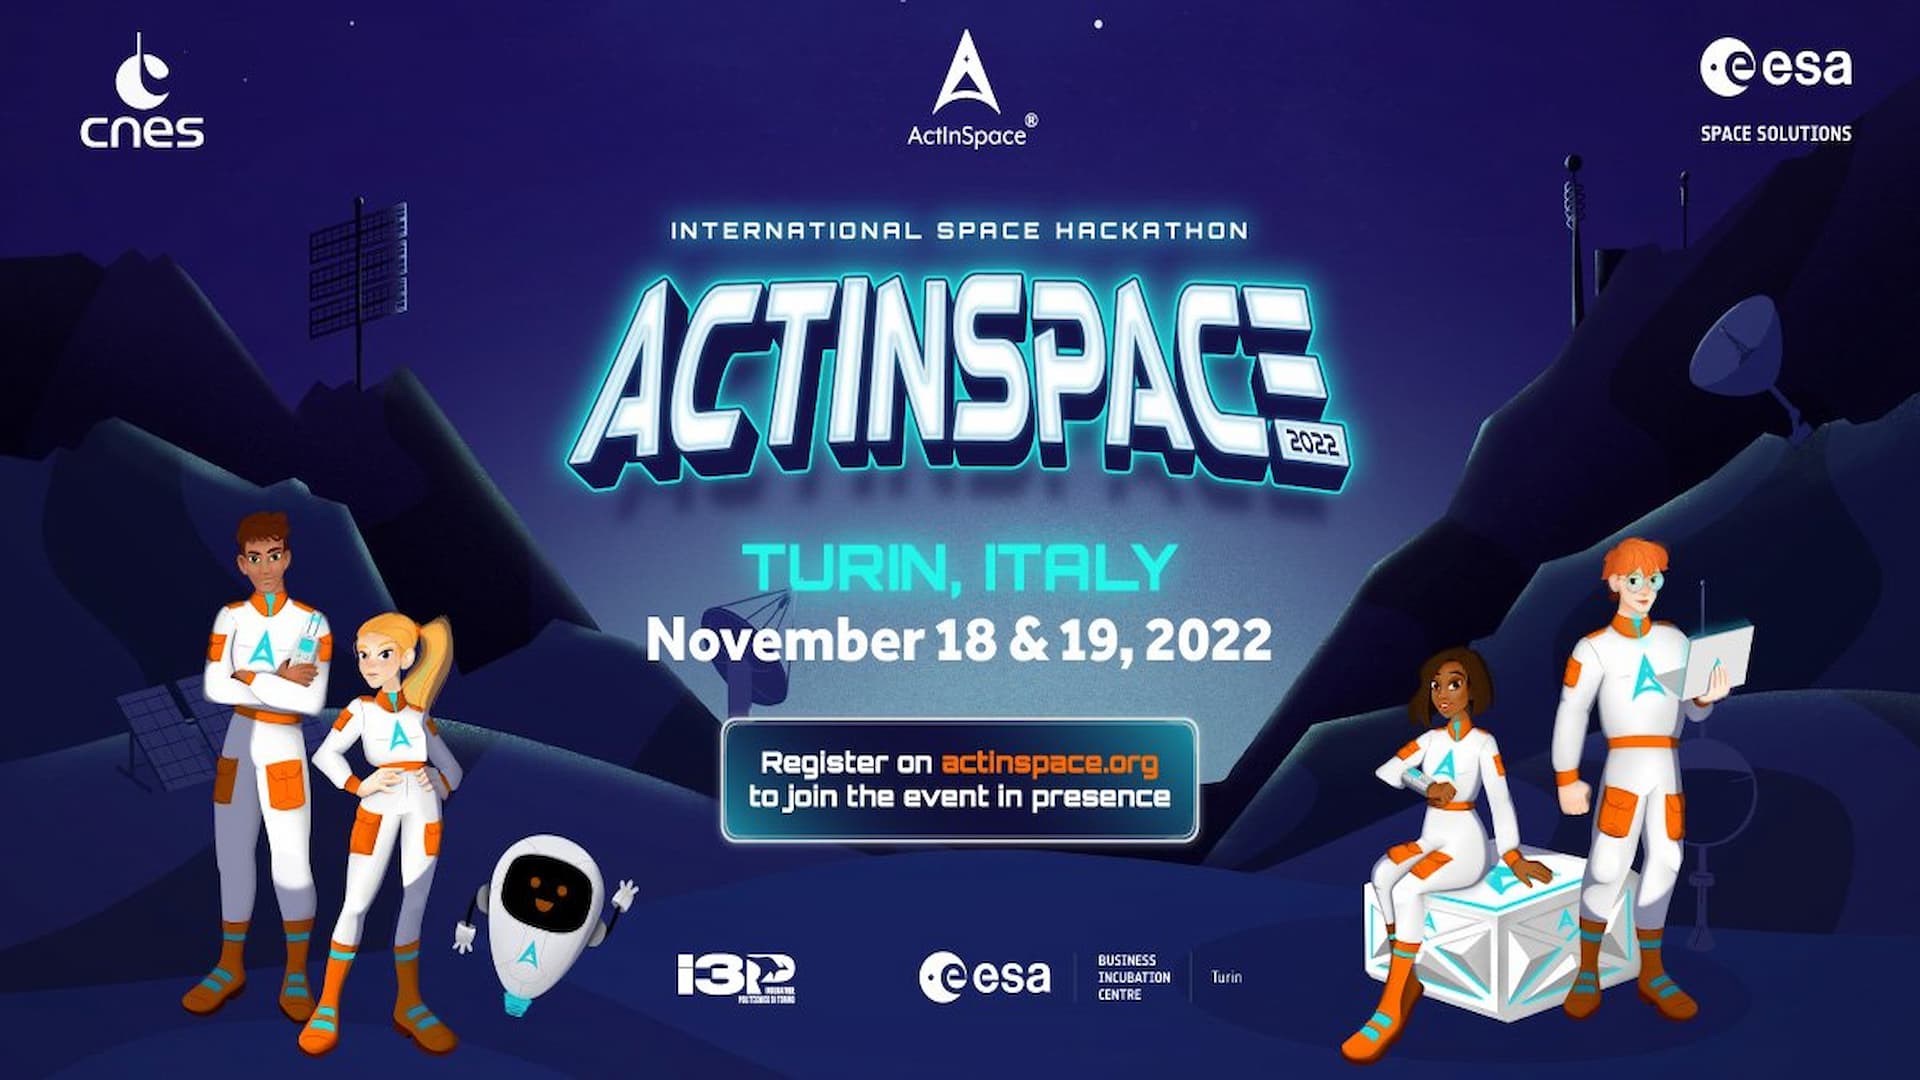 ASI - L’hackathon internazionale ActInSpace® 2022 atterra a Torino con I3P